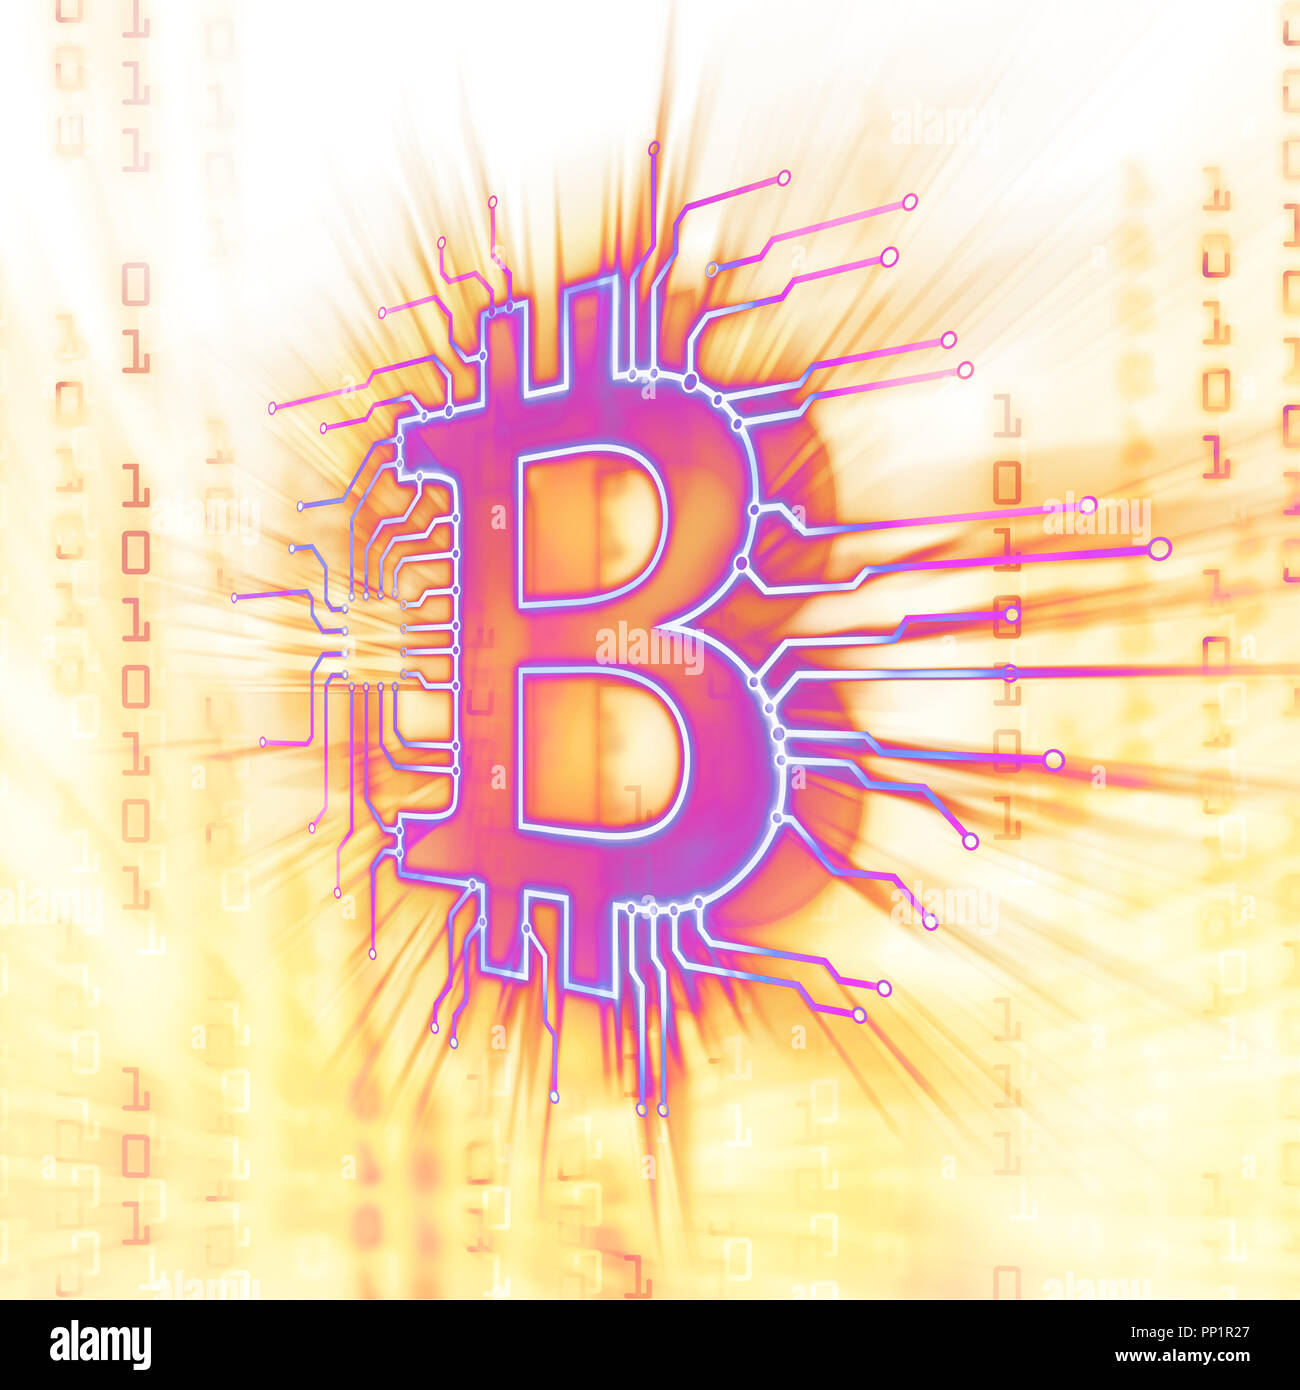 Bitcoin ₿ blockchain cryptocurrency im Netz, digitale Währungssymbol, konzeptionelle Darstellung in hell leuchtenden Purpur Gelb Farben Stockfoto